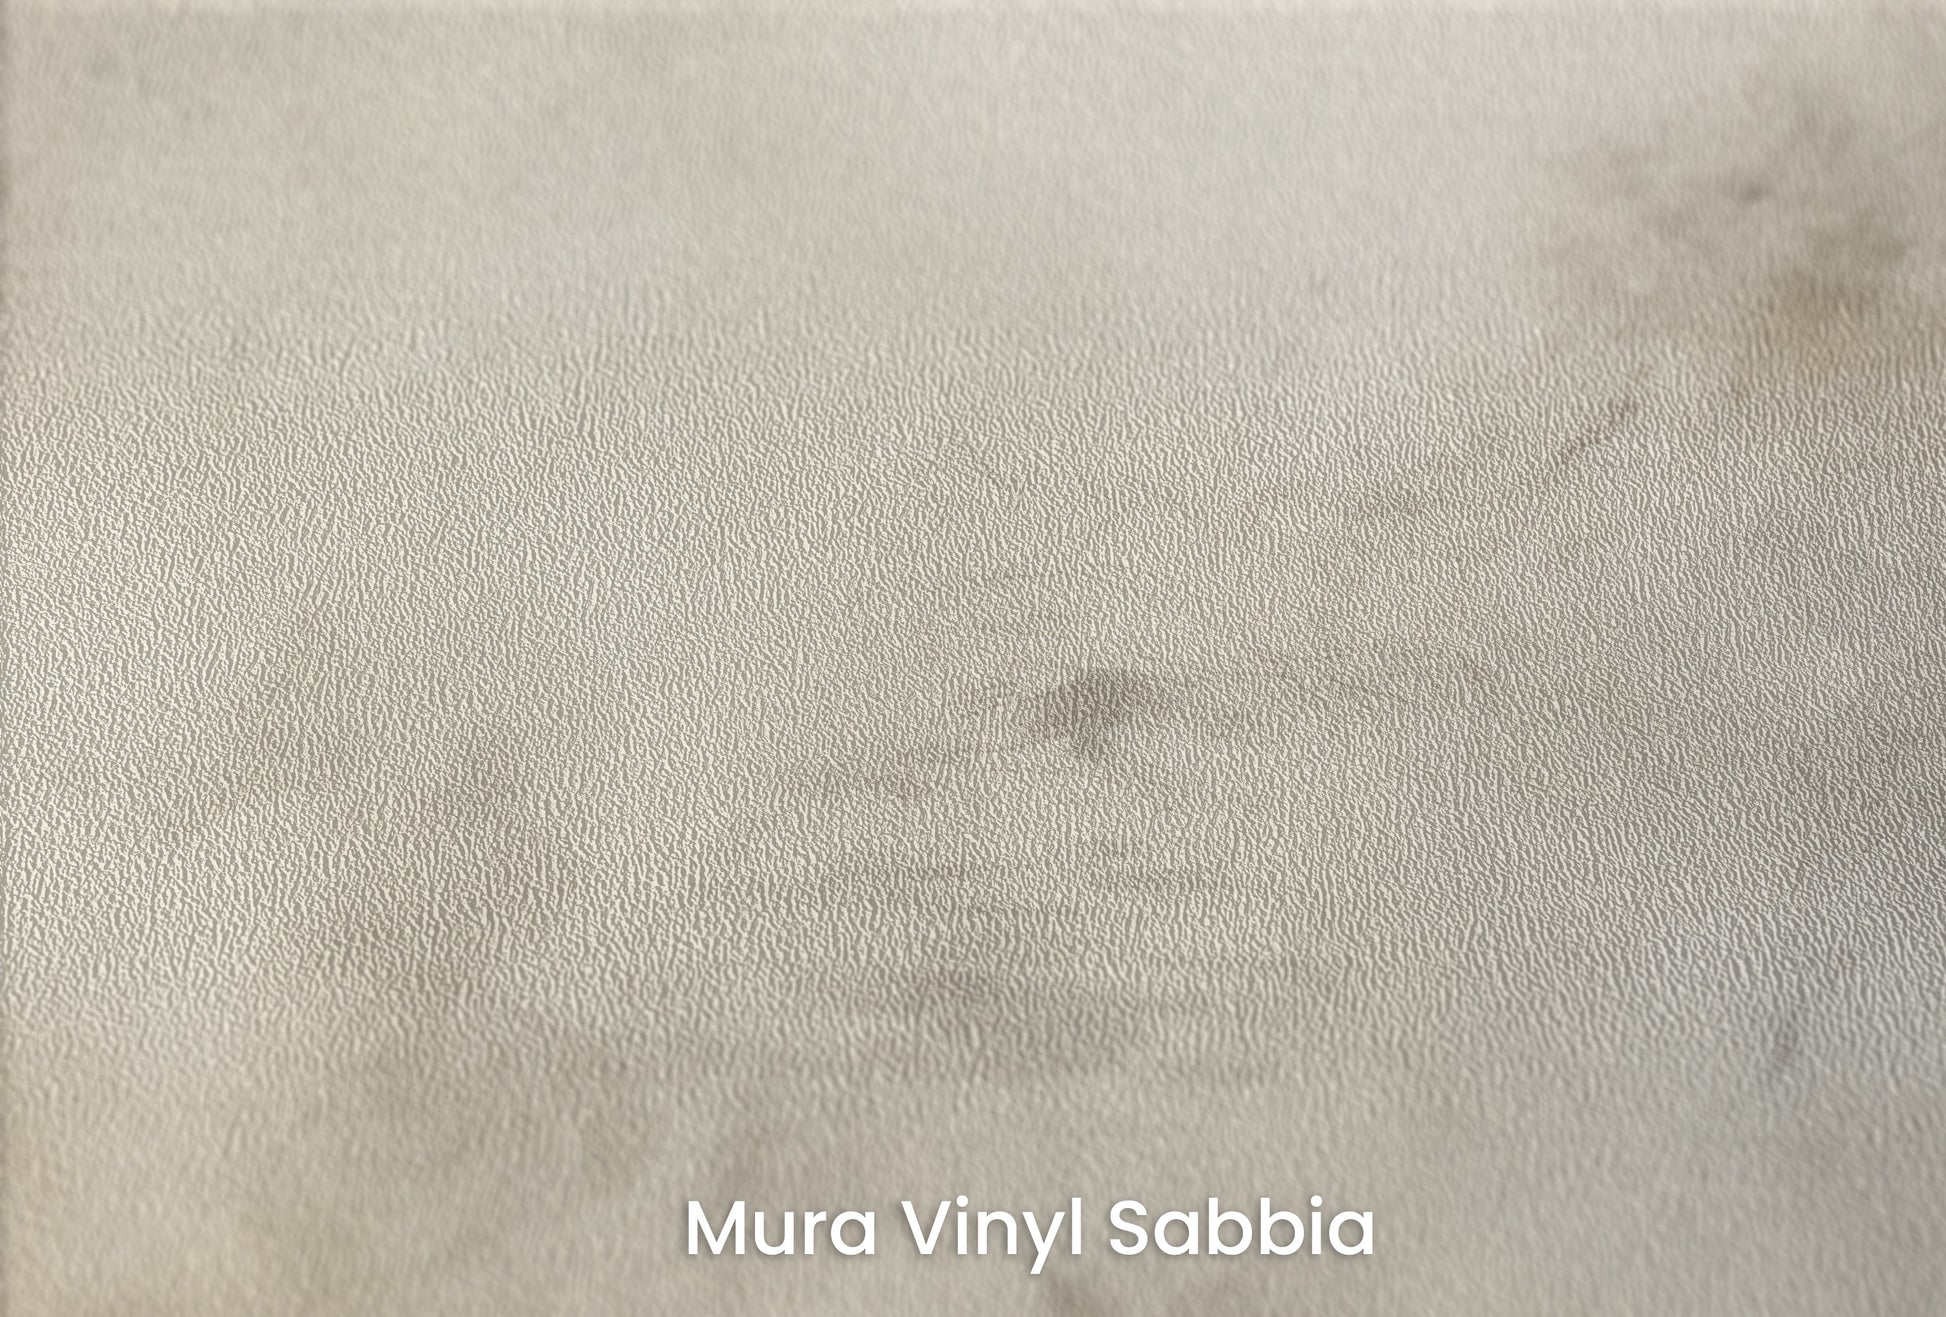 Zbliżenie na artystyczną fototapetę o nazwie WHISPERING CLOUD WALTZ na podłożu Mura Vinyl Sabbia struktura grubego ziarna piasku.